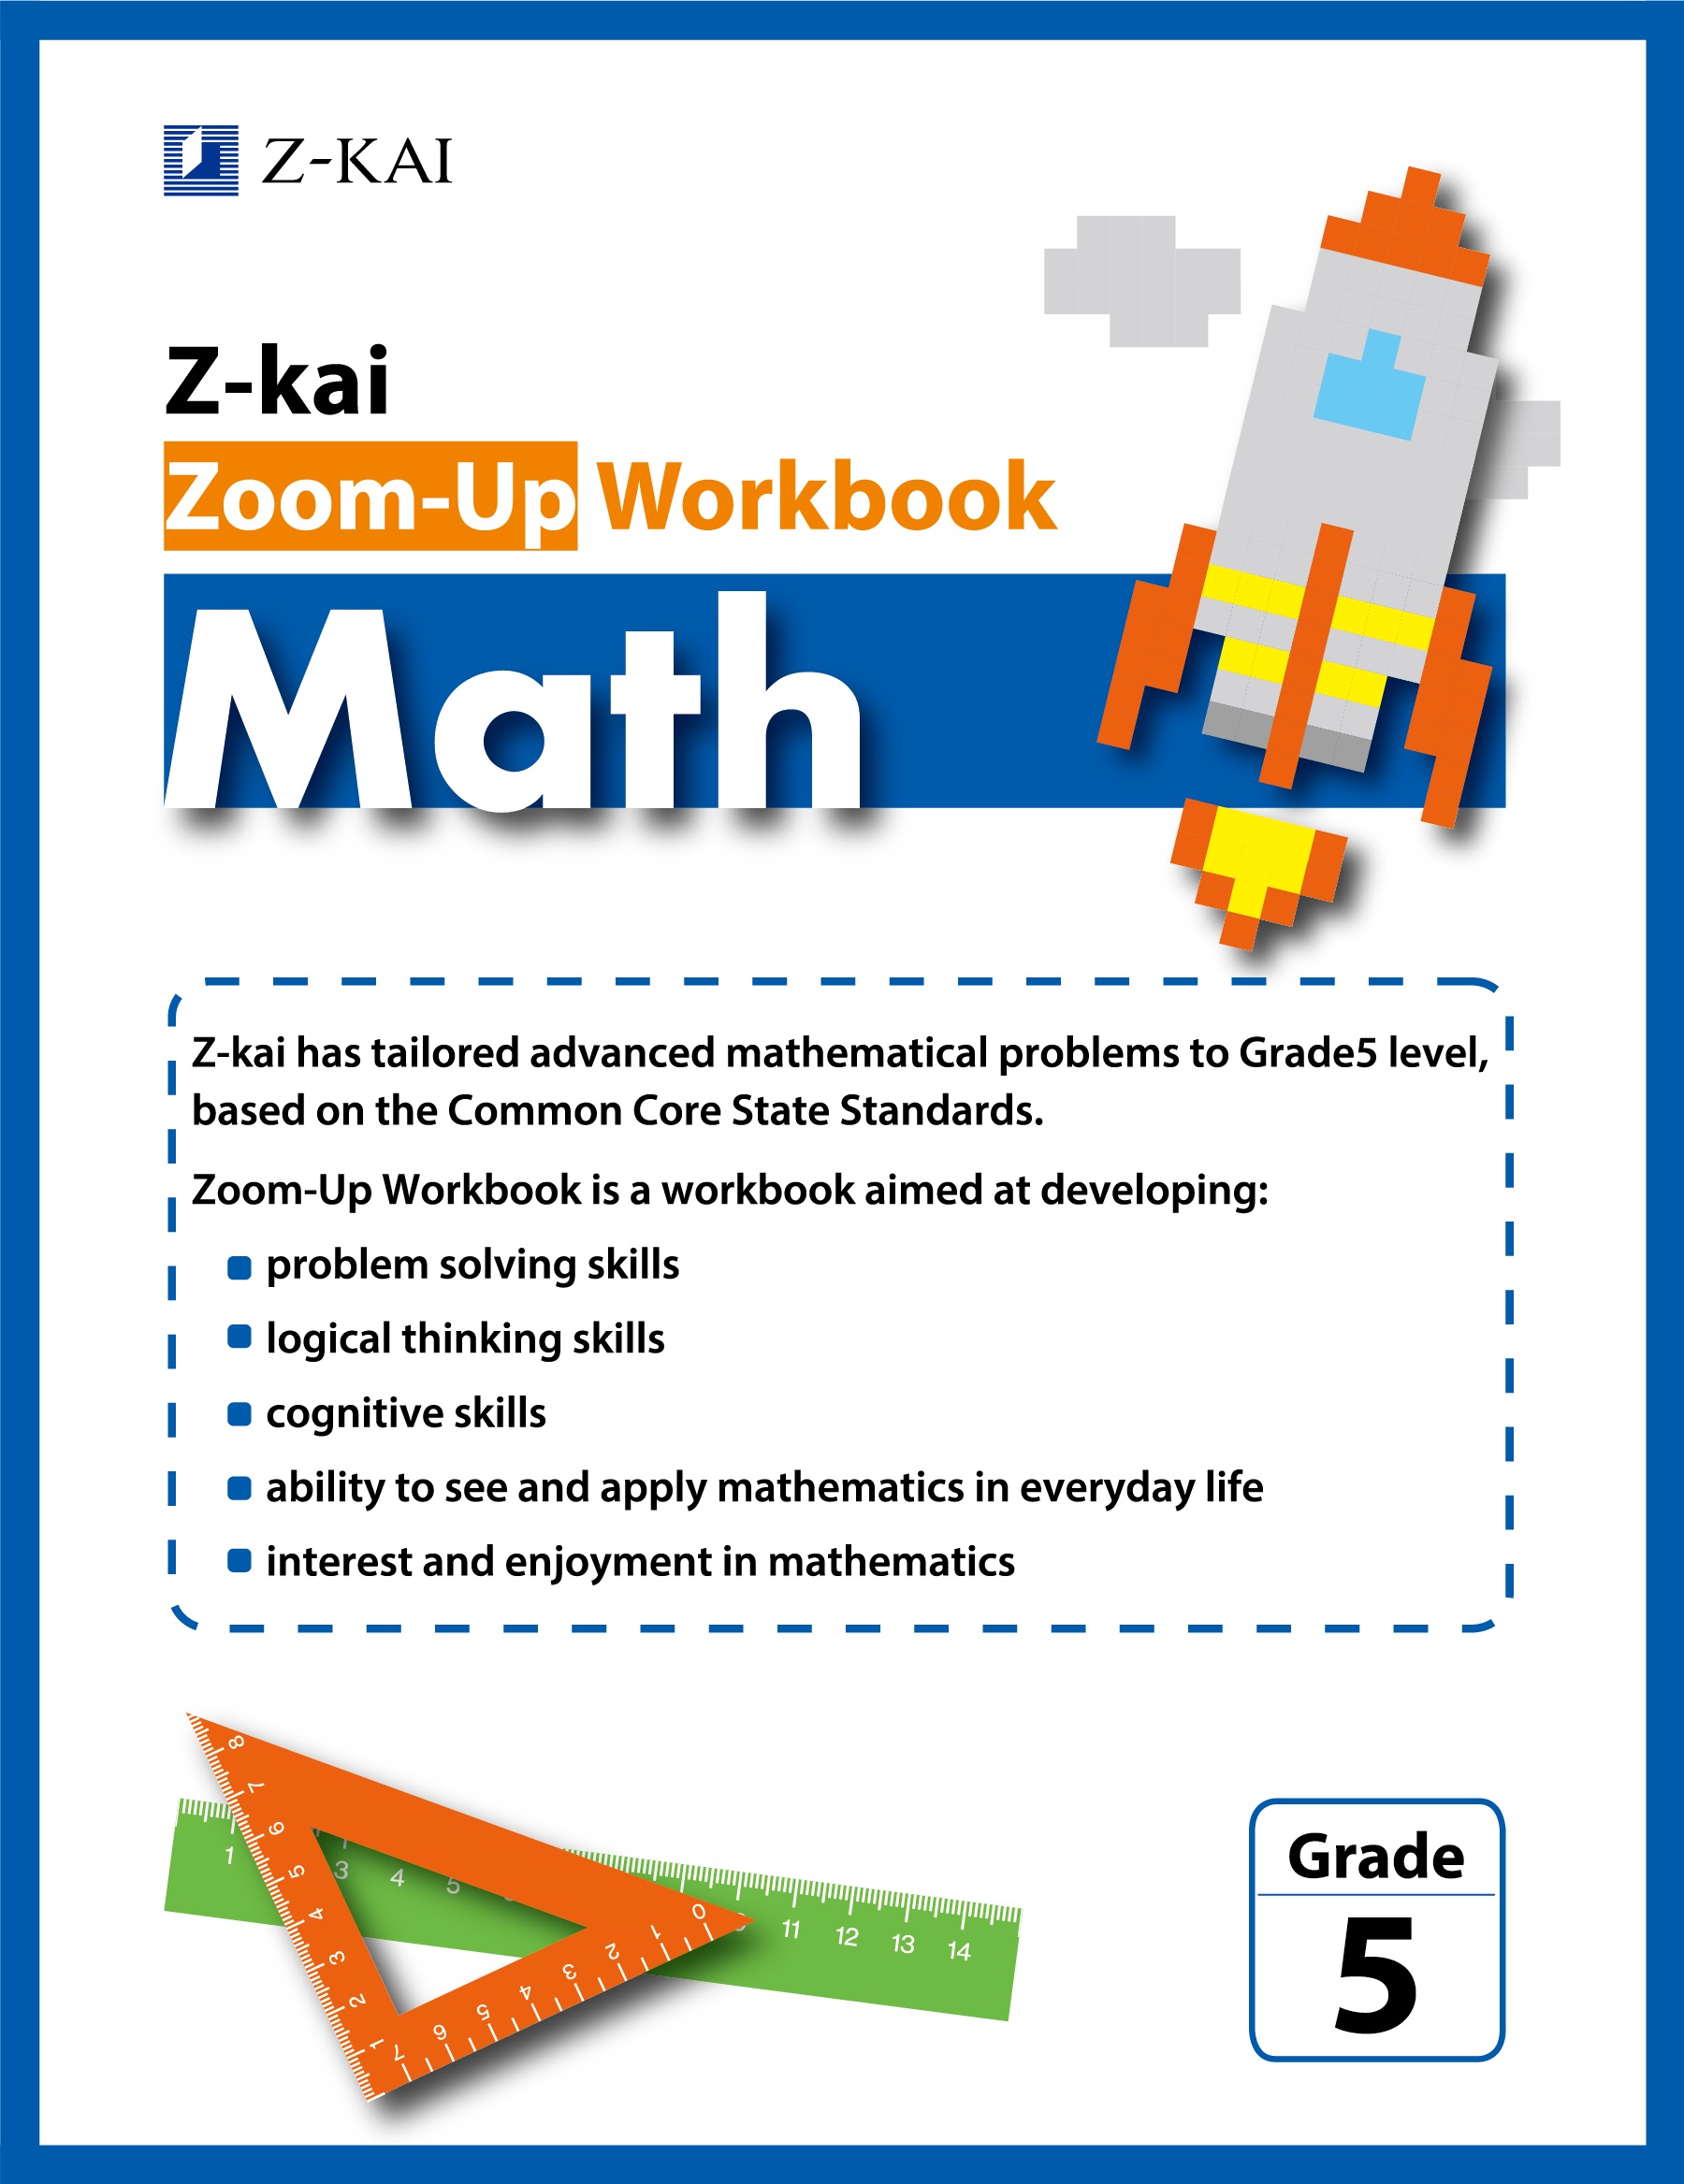 Z-kai Zoom-Up Workbook Math Grade 5